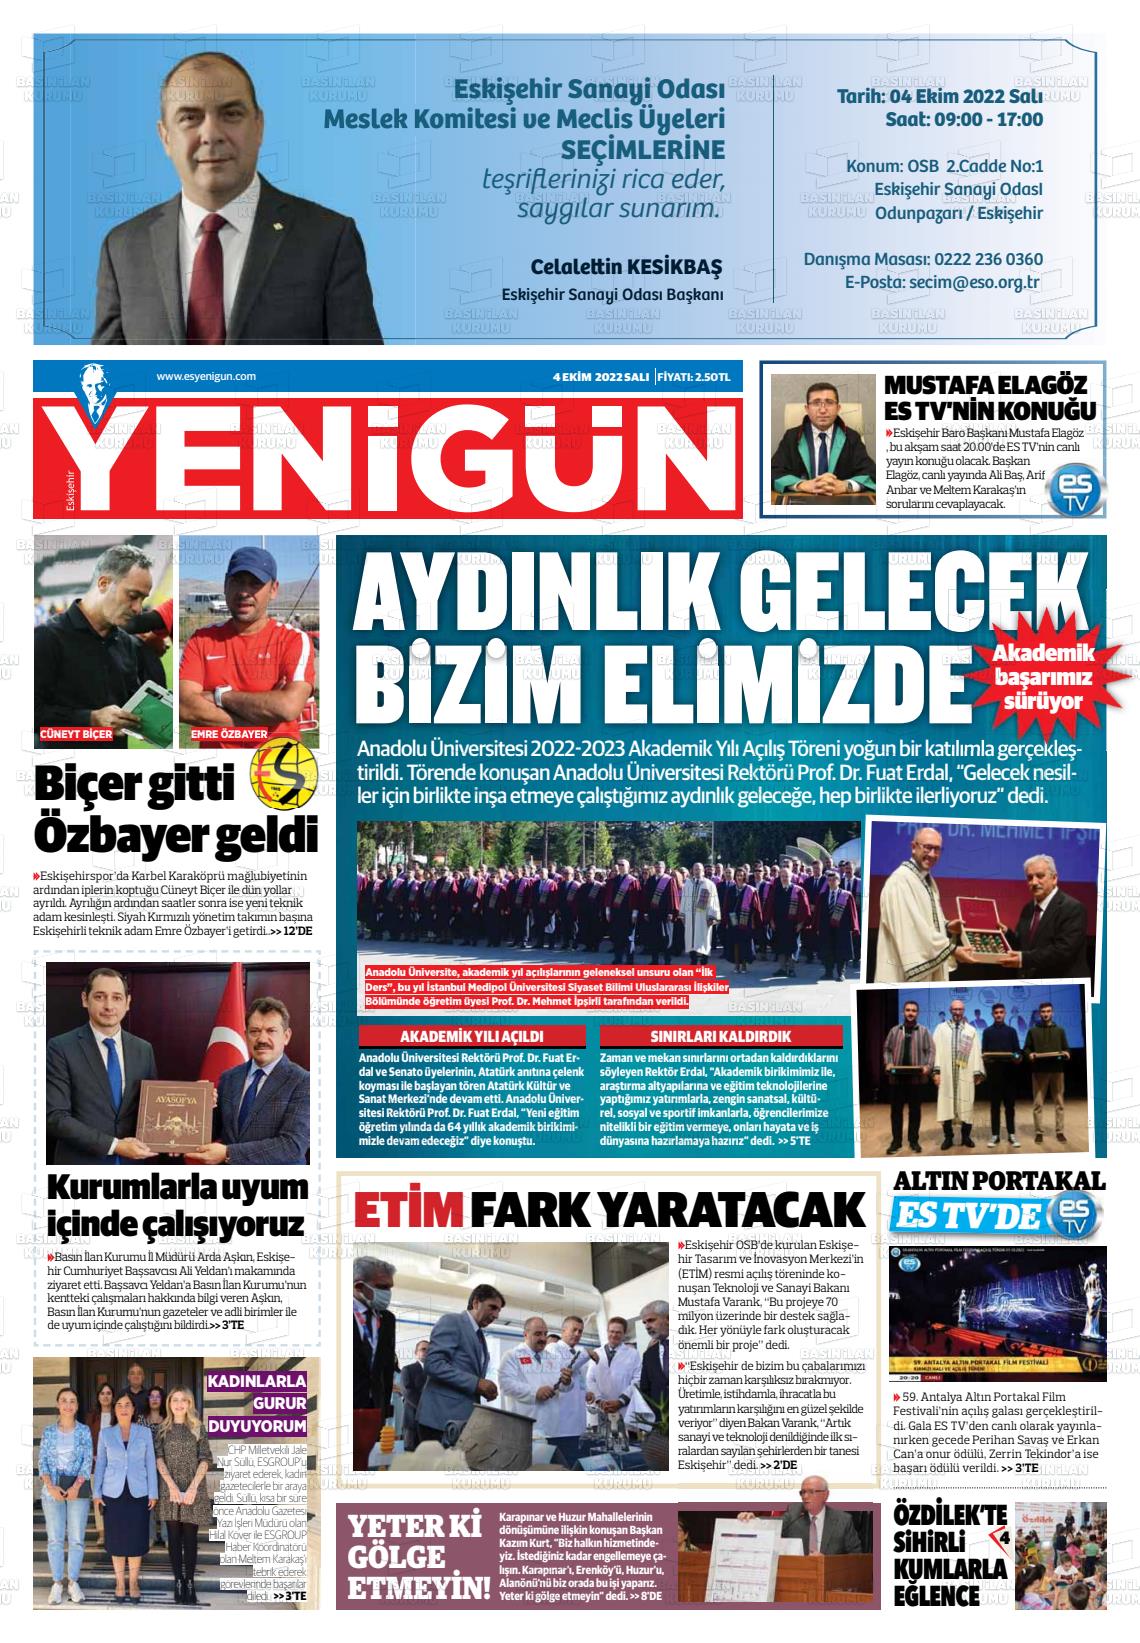 04 Ekim 2022 Eskişehir Yeni Gün Gazete Manşeti